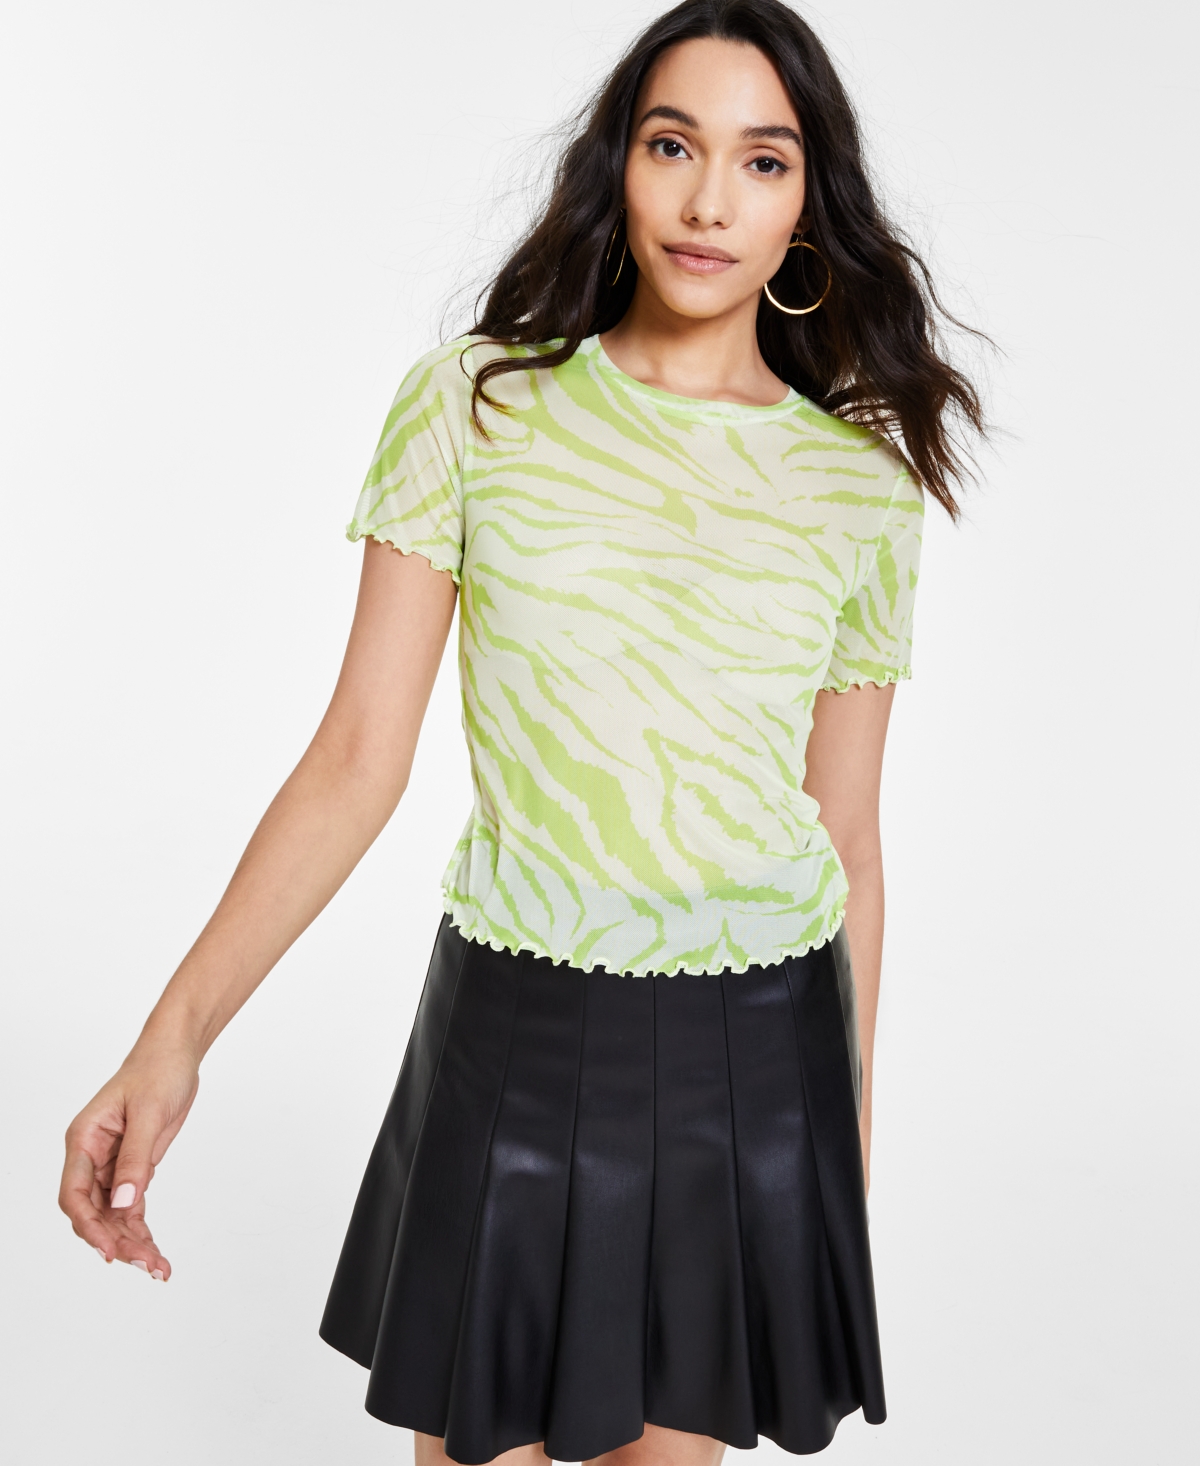 Women's Printed Mesh Lettuce-Edged T-Shirt, Created for Macy's - Chelsea Zebra C